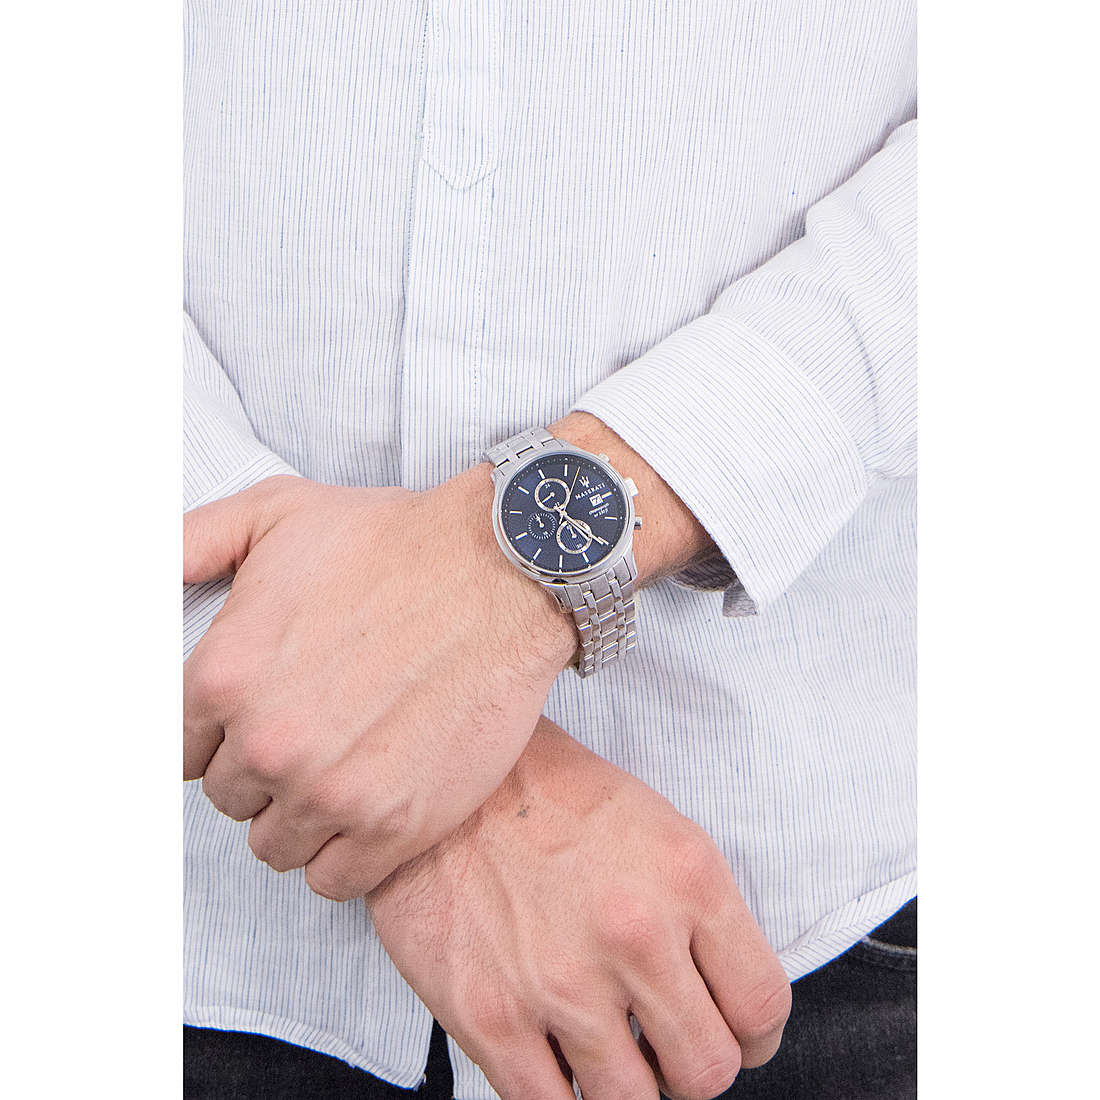 Maserati chronographs Gentleman man R8873636001 wearing